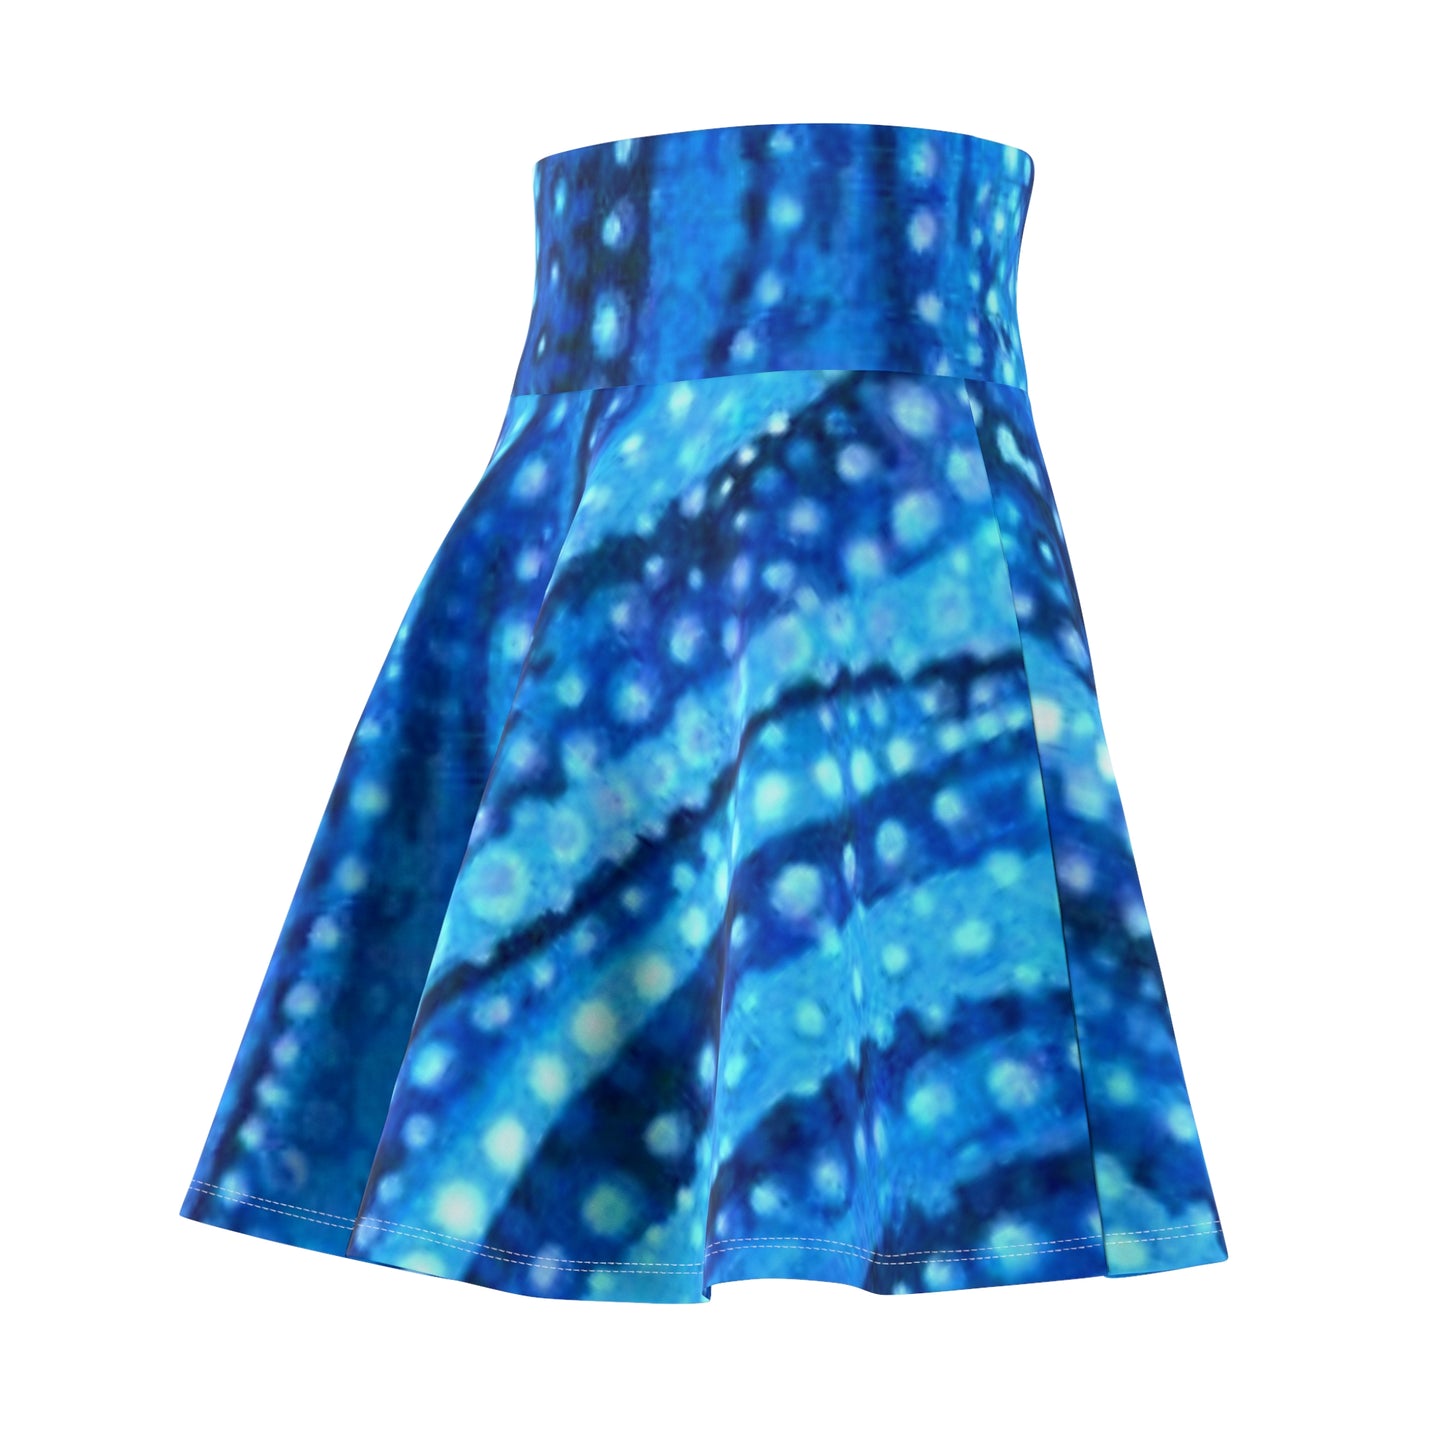 Blue Lagoon Women's Skater Skirt (AOP)